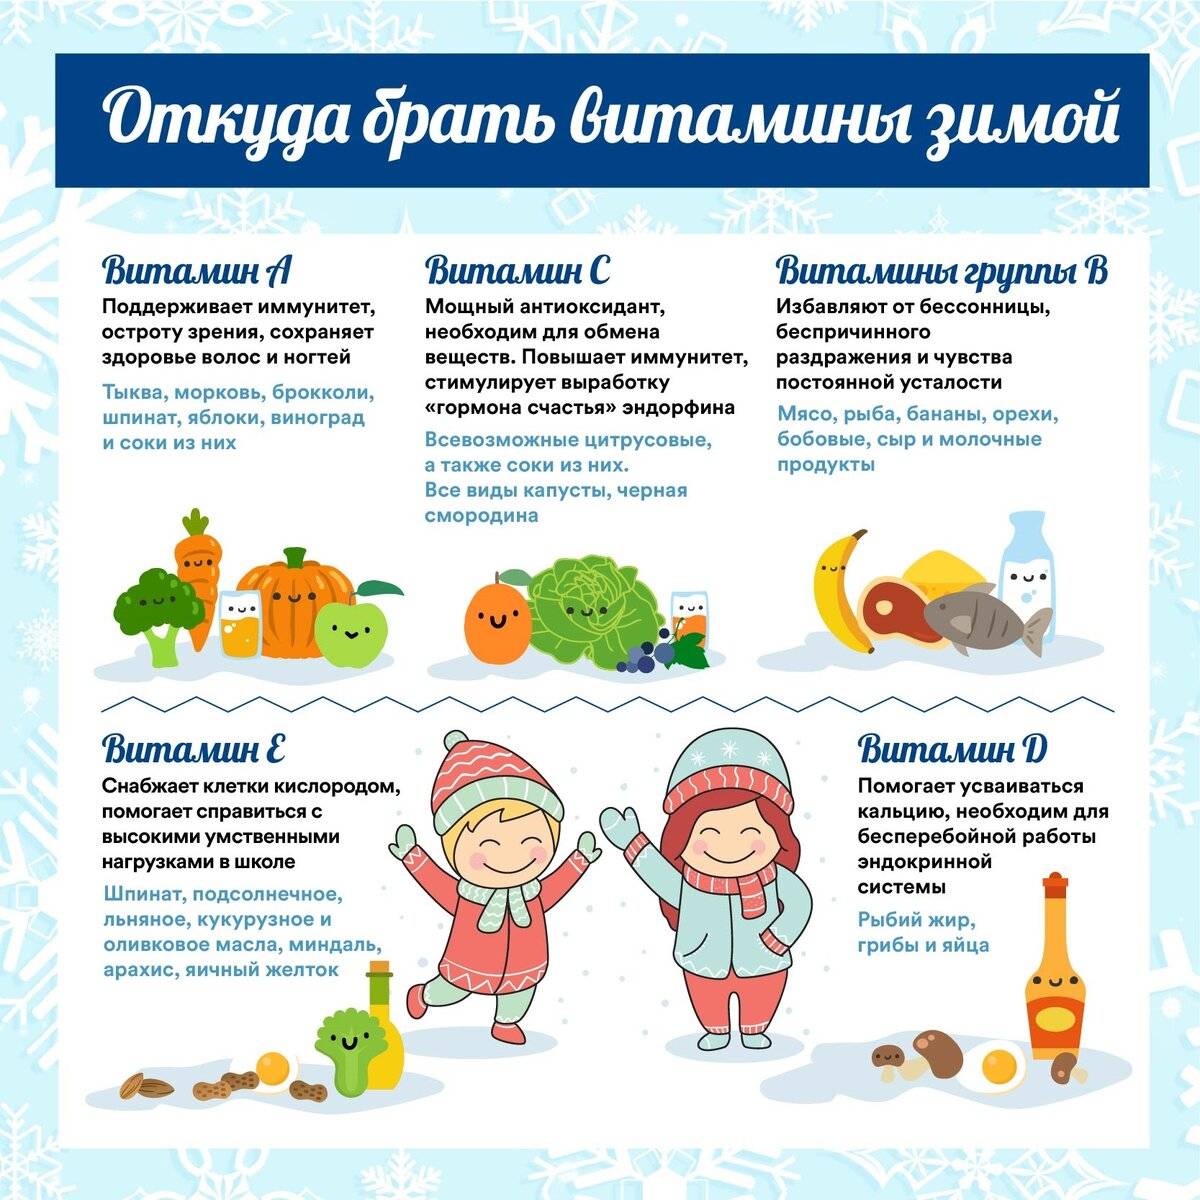 Иммунно поддерживающие. Зимние витамины. Питание дошкольников в зимний период. Витамины зимой. Укрепляем детский иммунитет.